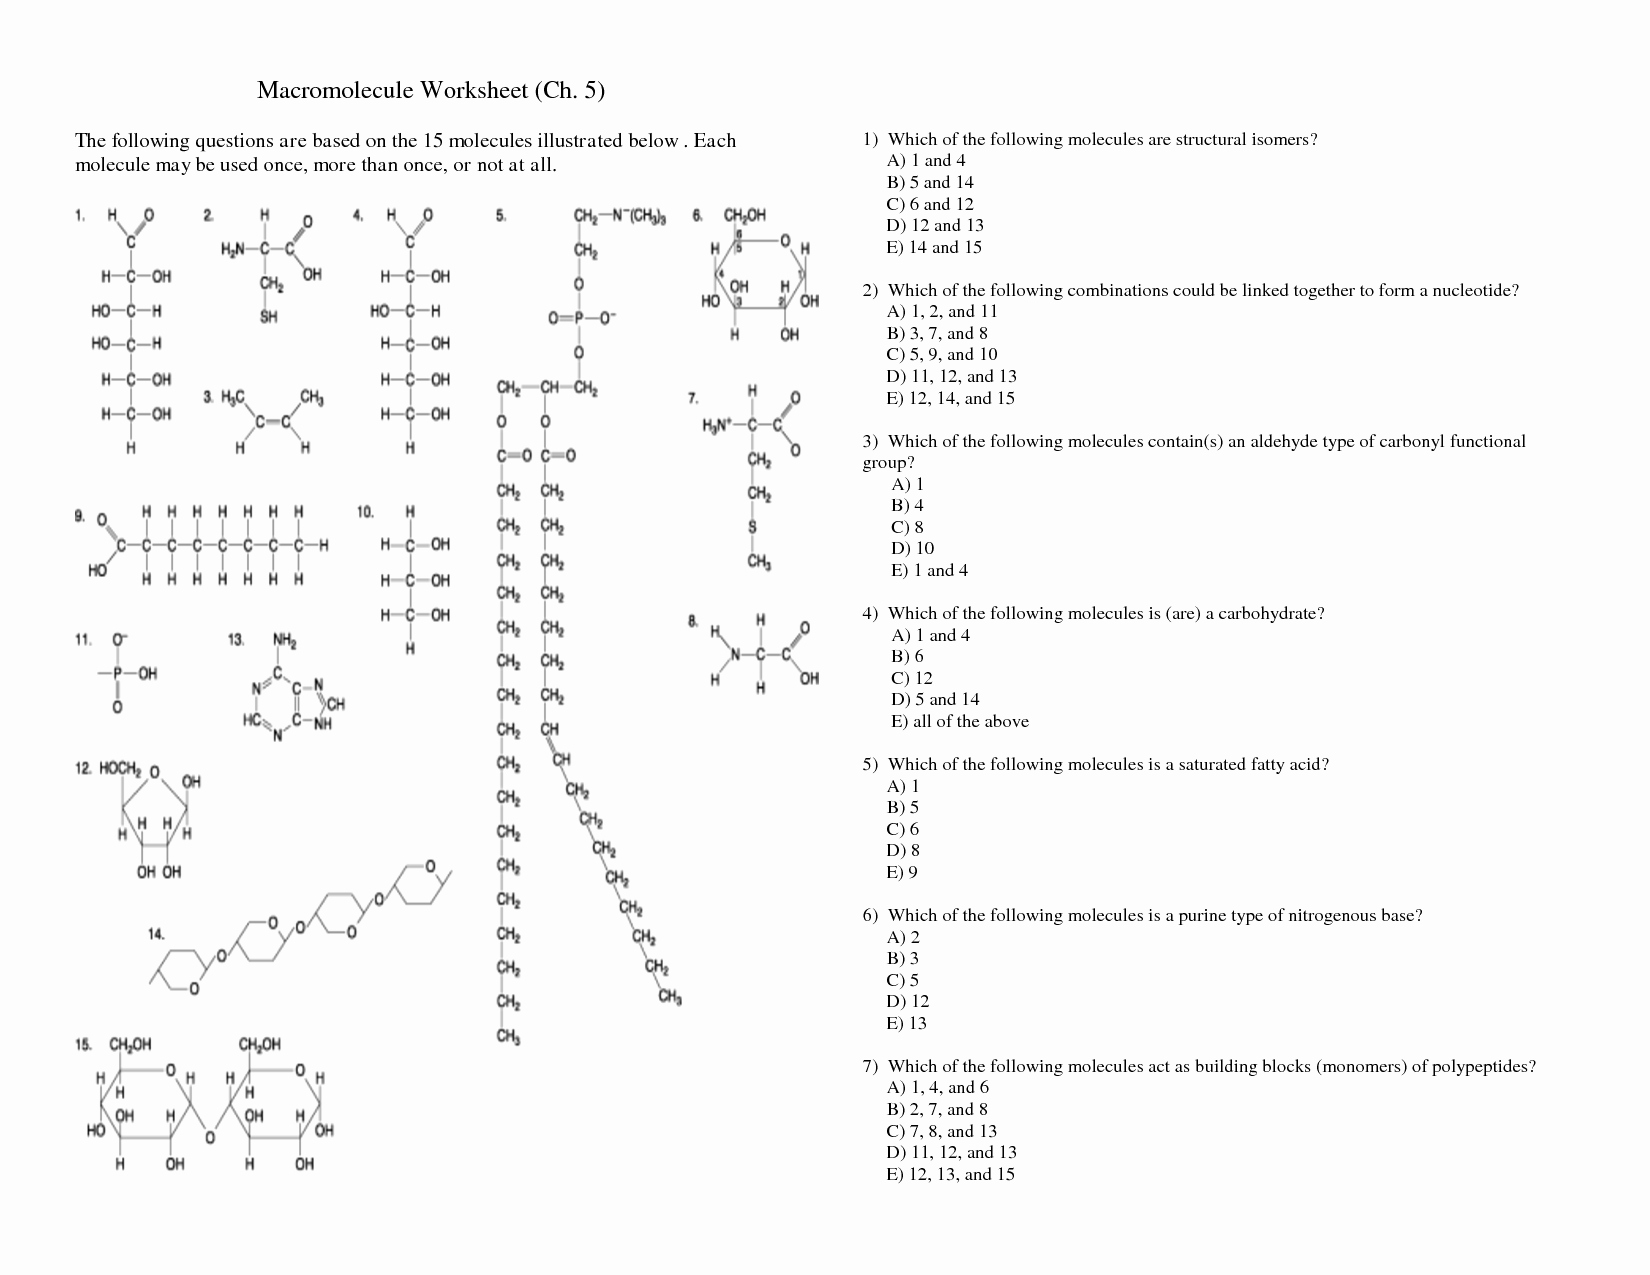 Macromolecules Worksheet #2 Answers New 16 Best Of Macromolecules Worksheet Answers 2 Part